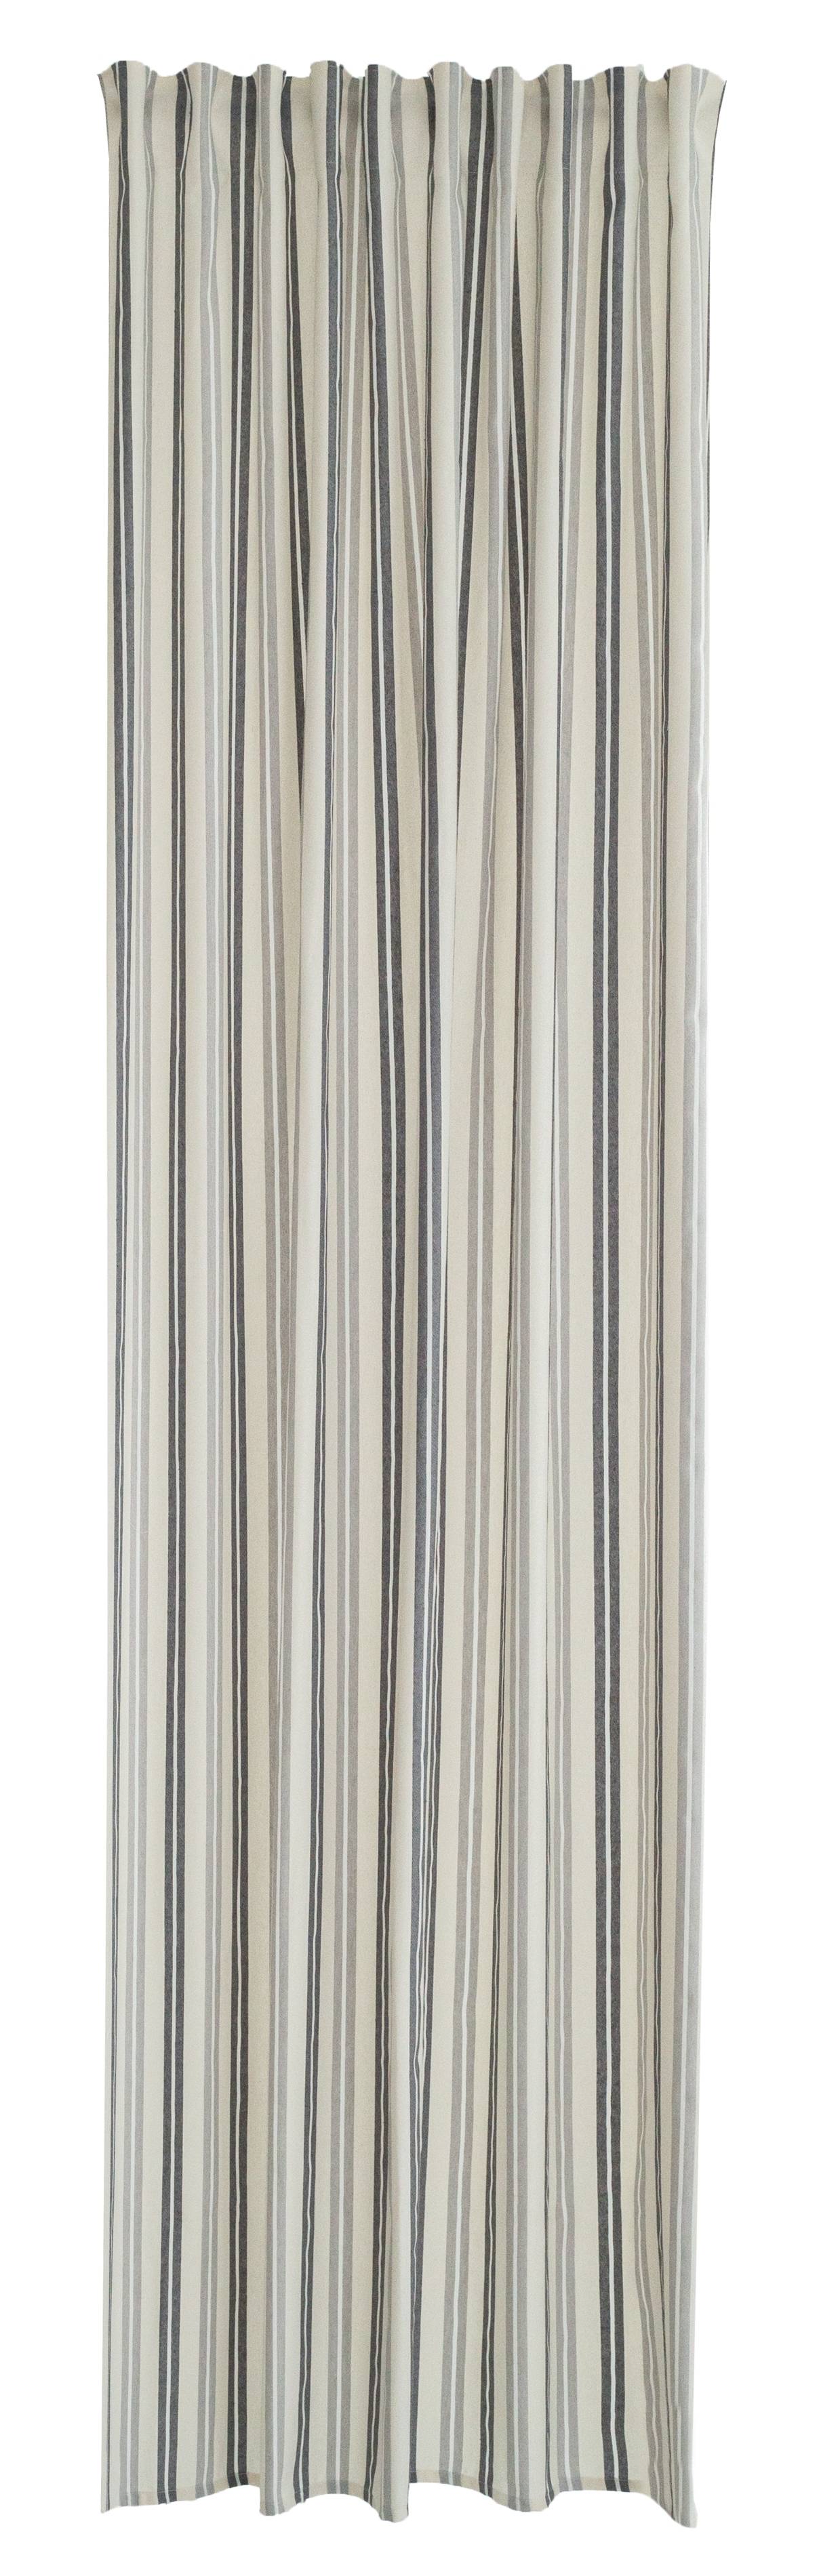 Vorhang baumwolle grau-schwarz home24 kaufen | streifen